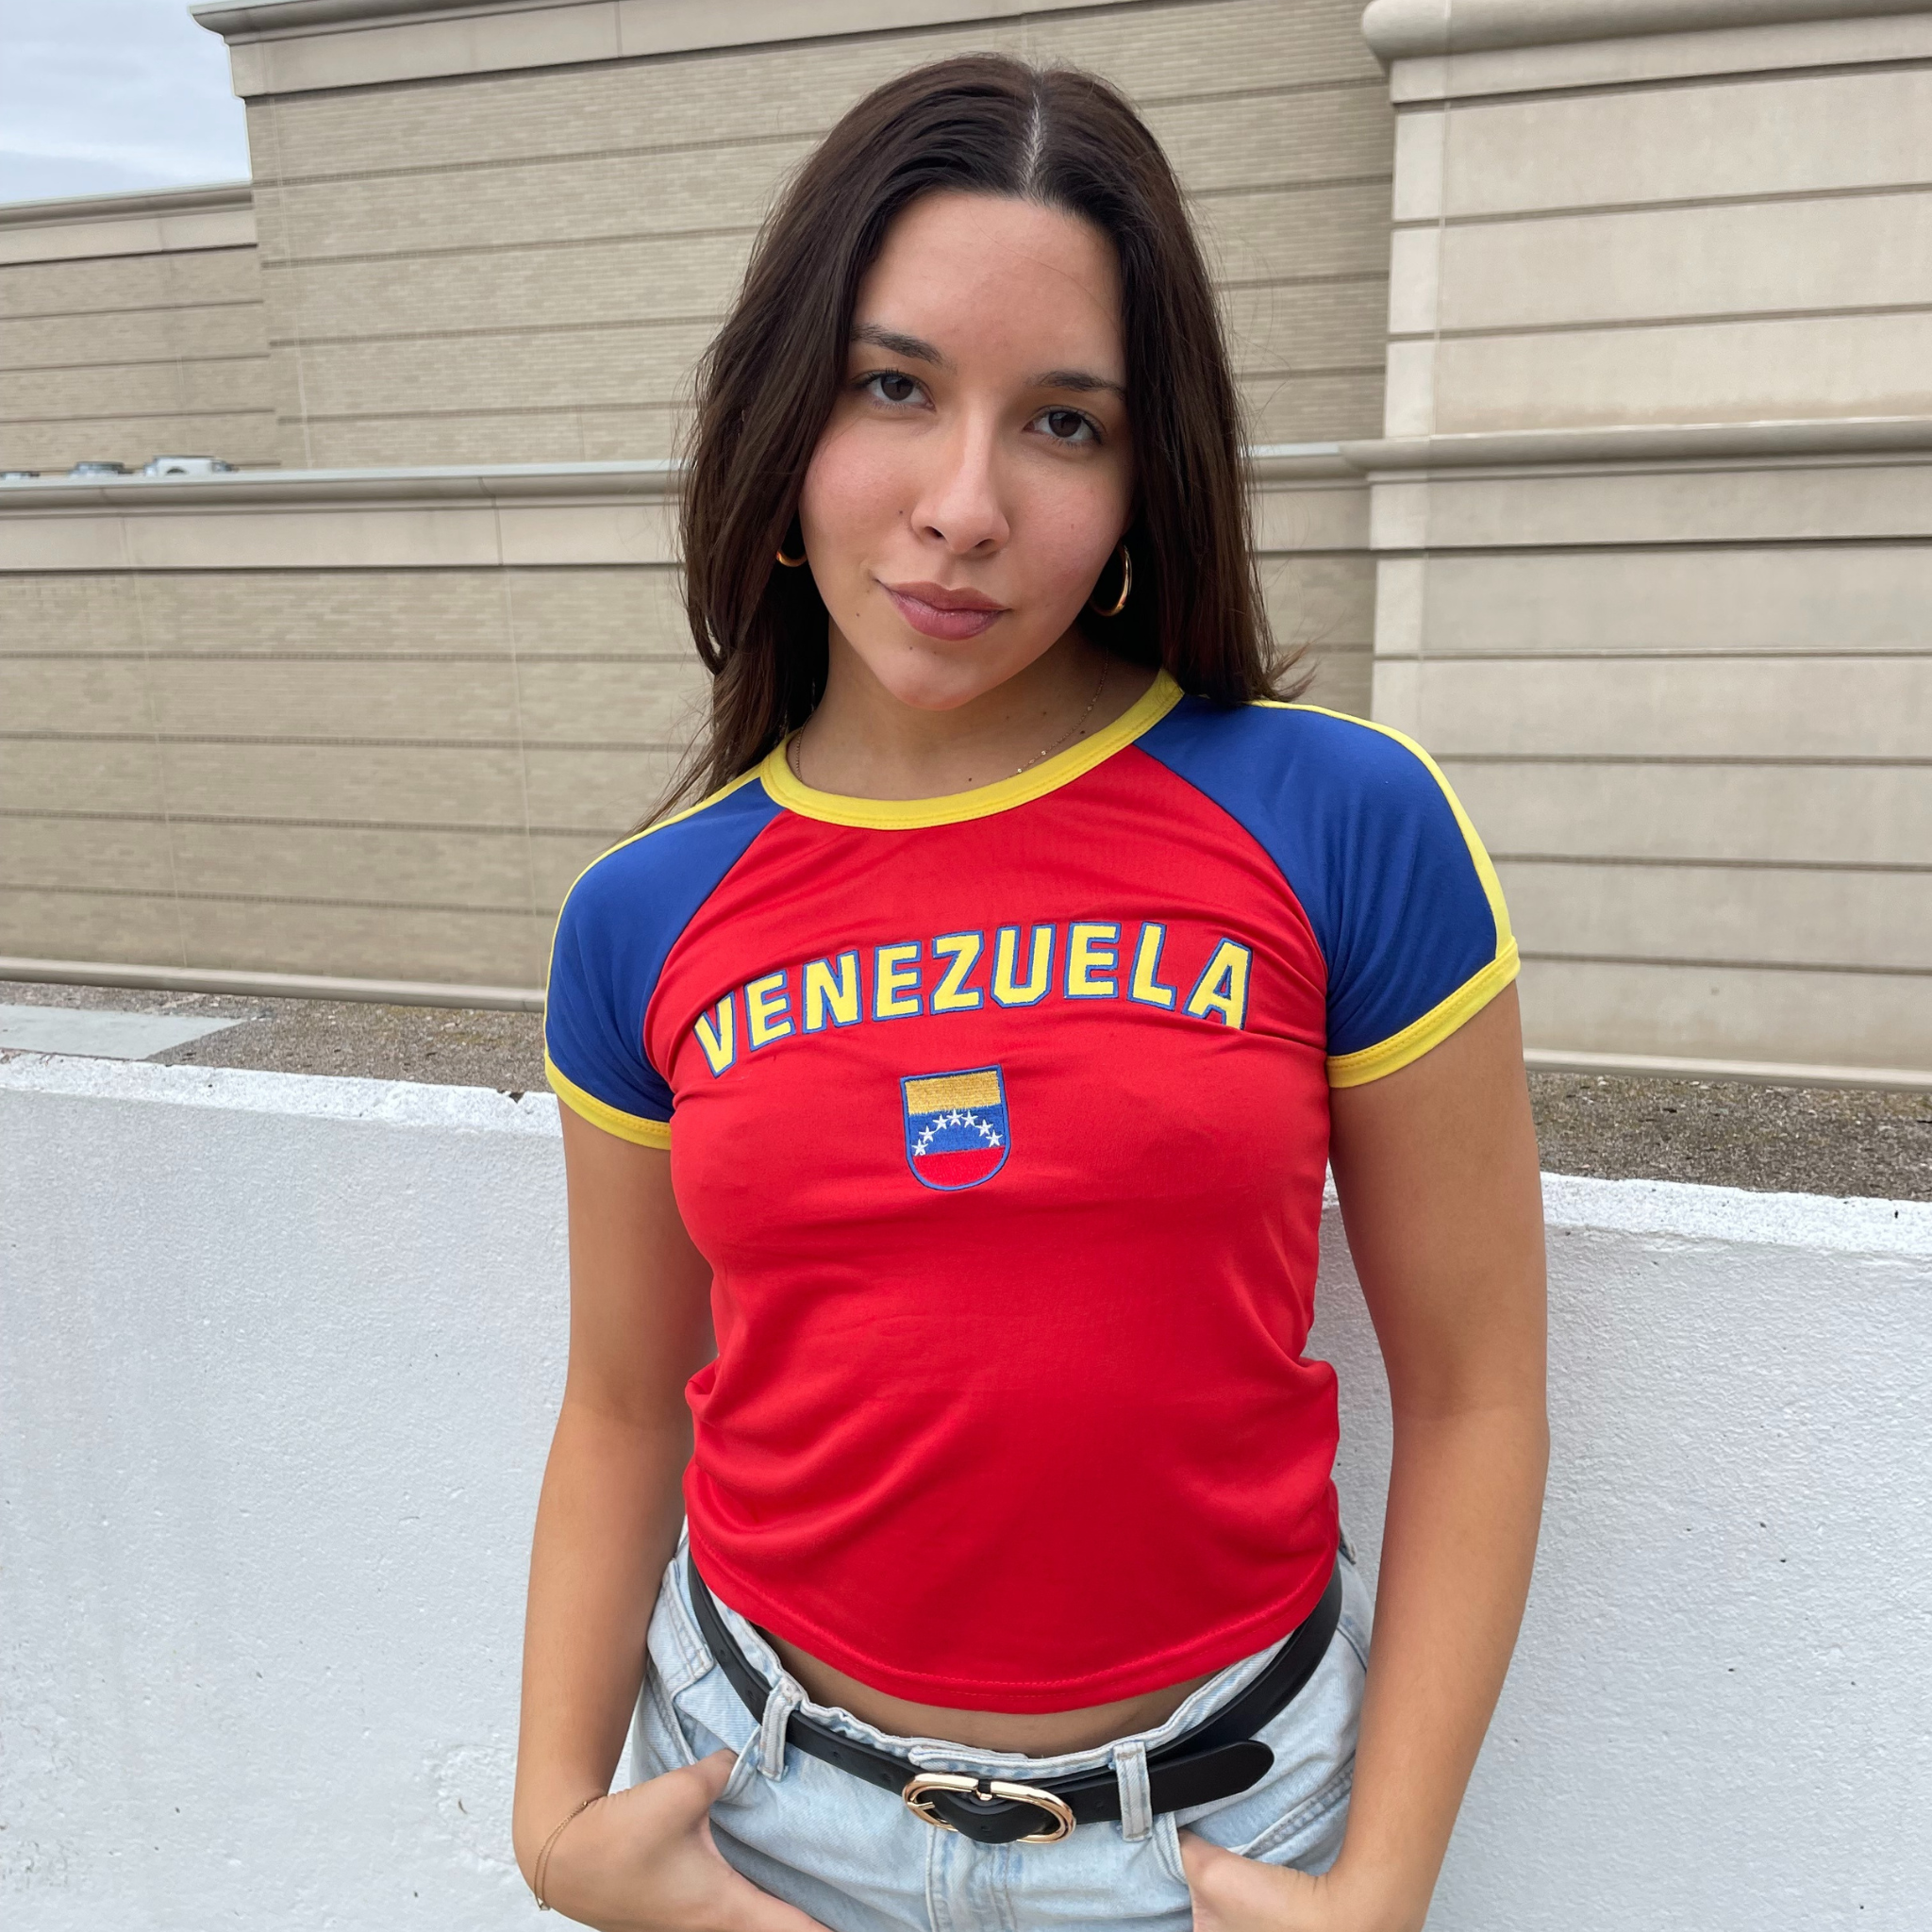 Venezuela Baby Tee